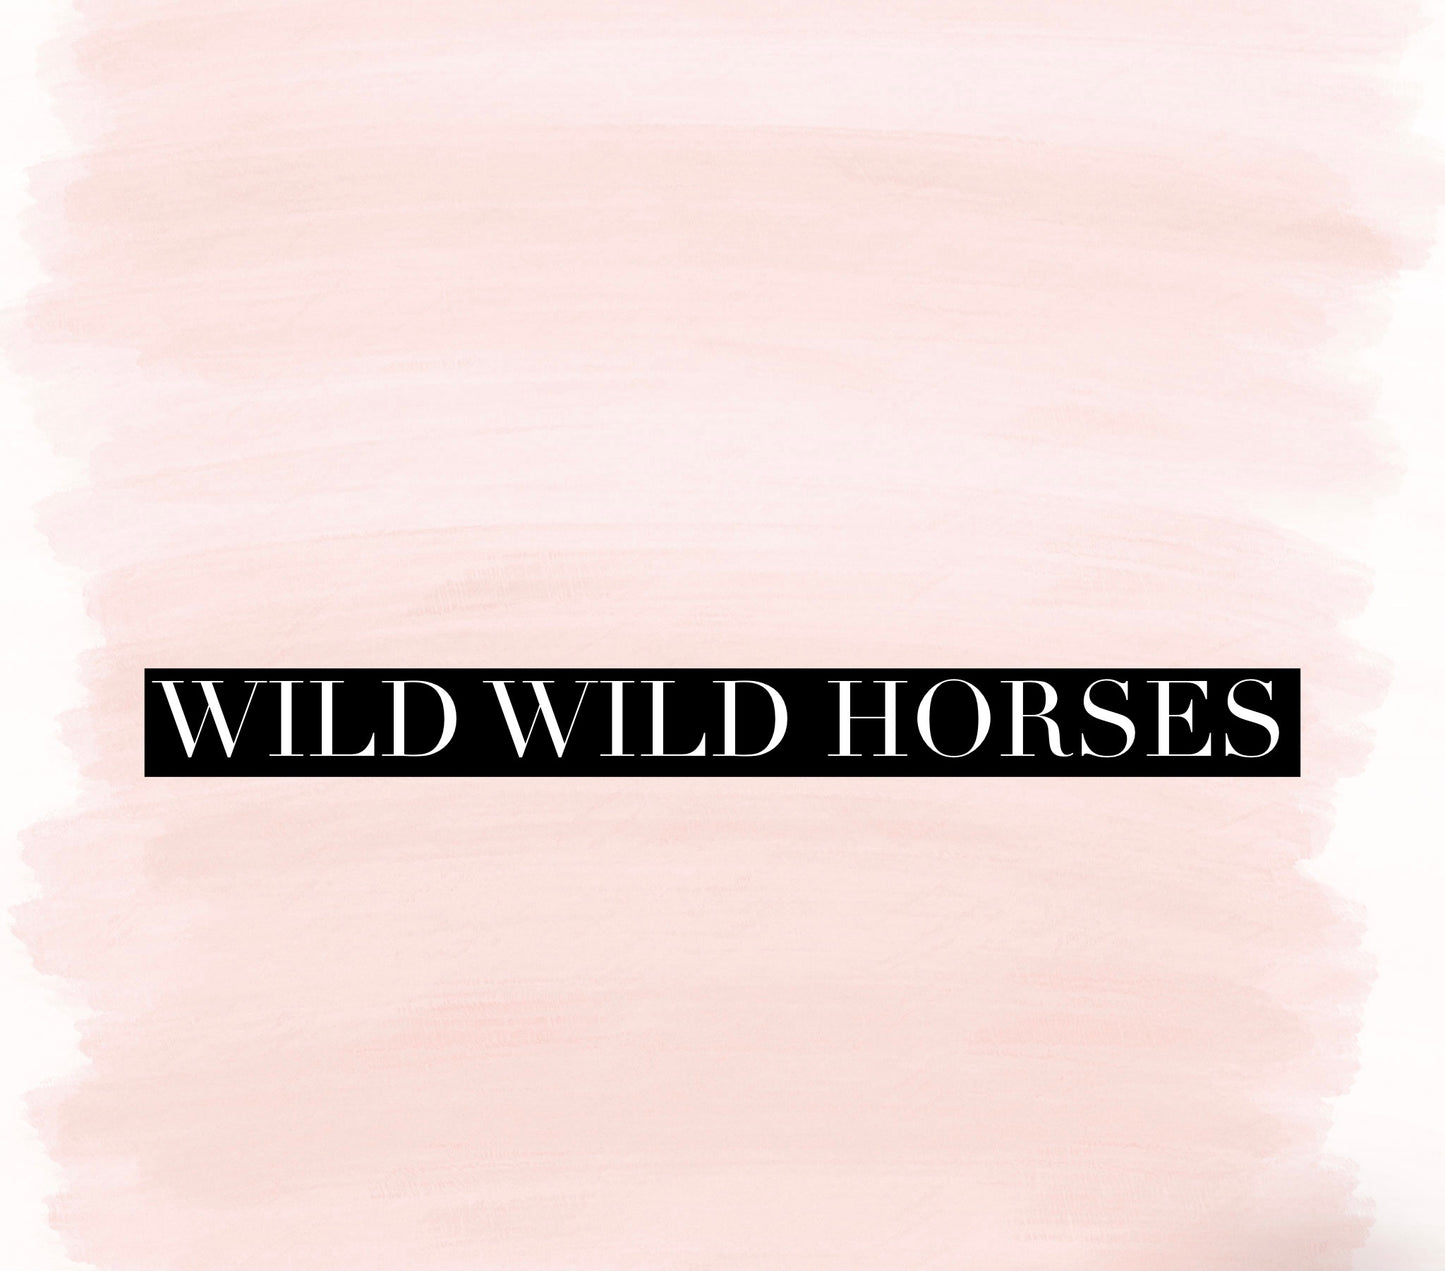 Wild Wild Horses